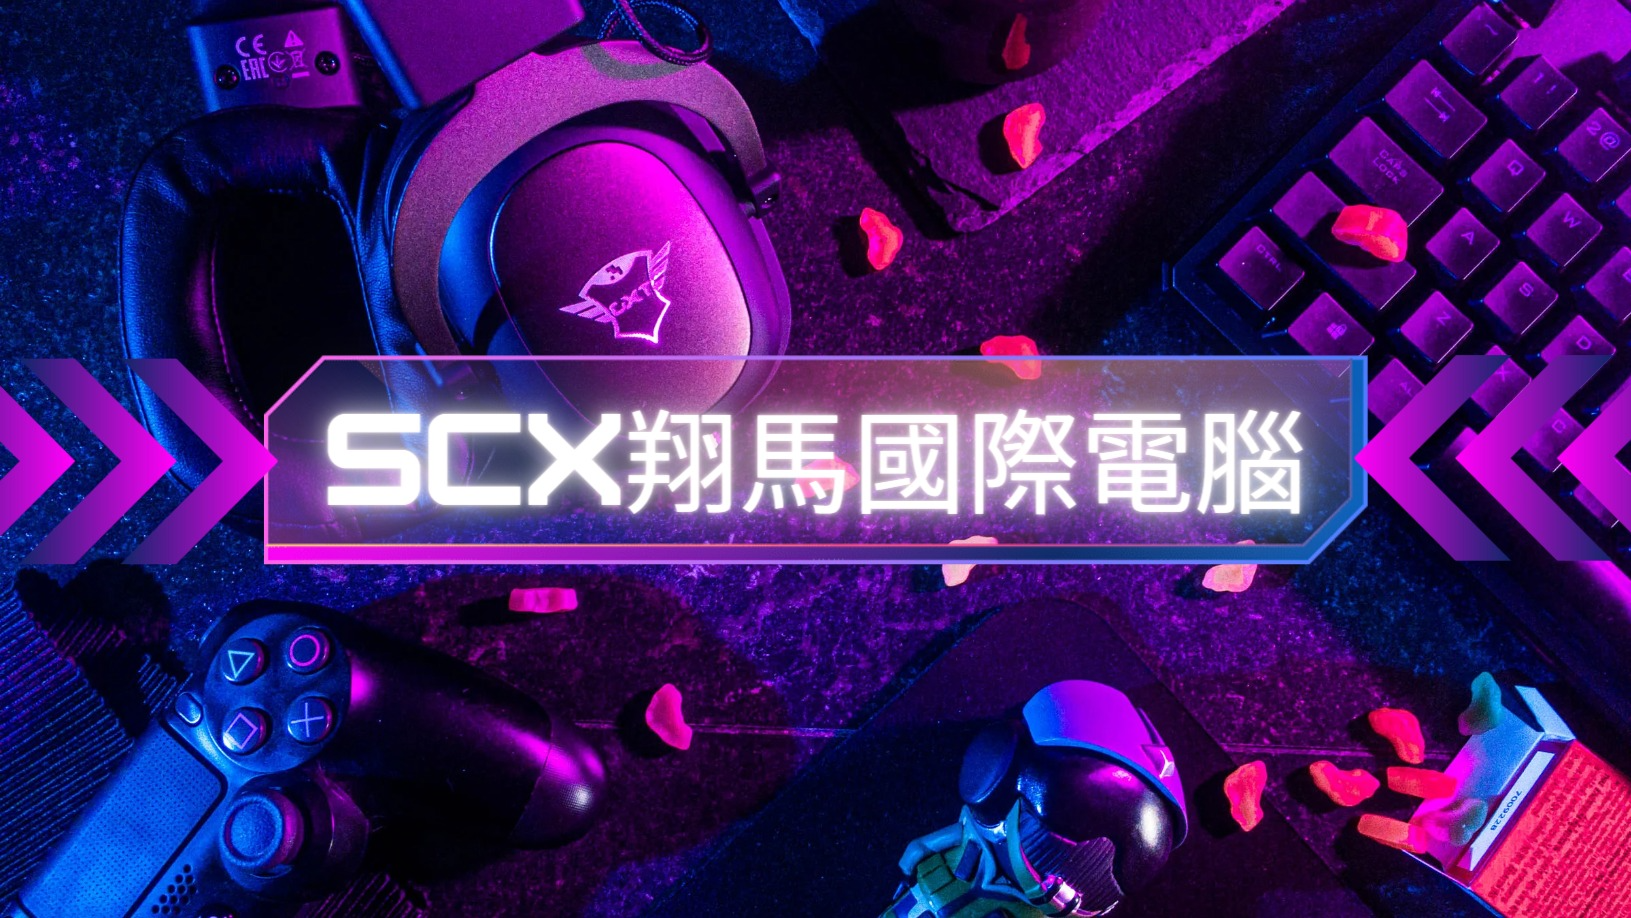 SCX翔馬國際電腦